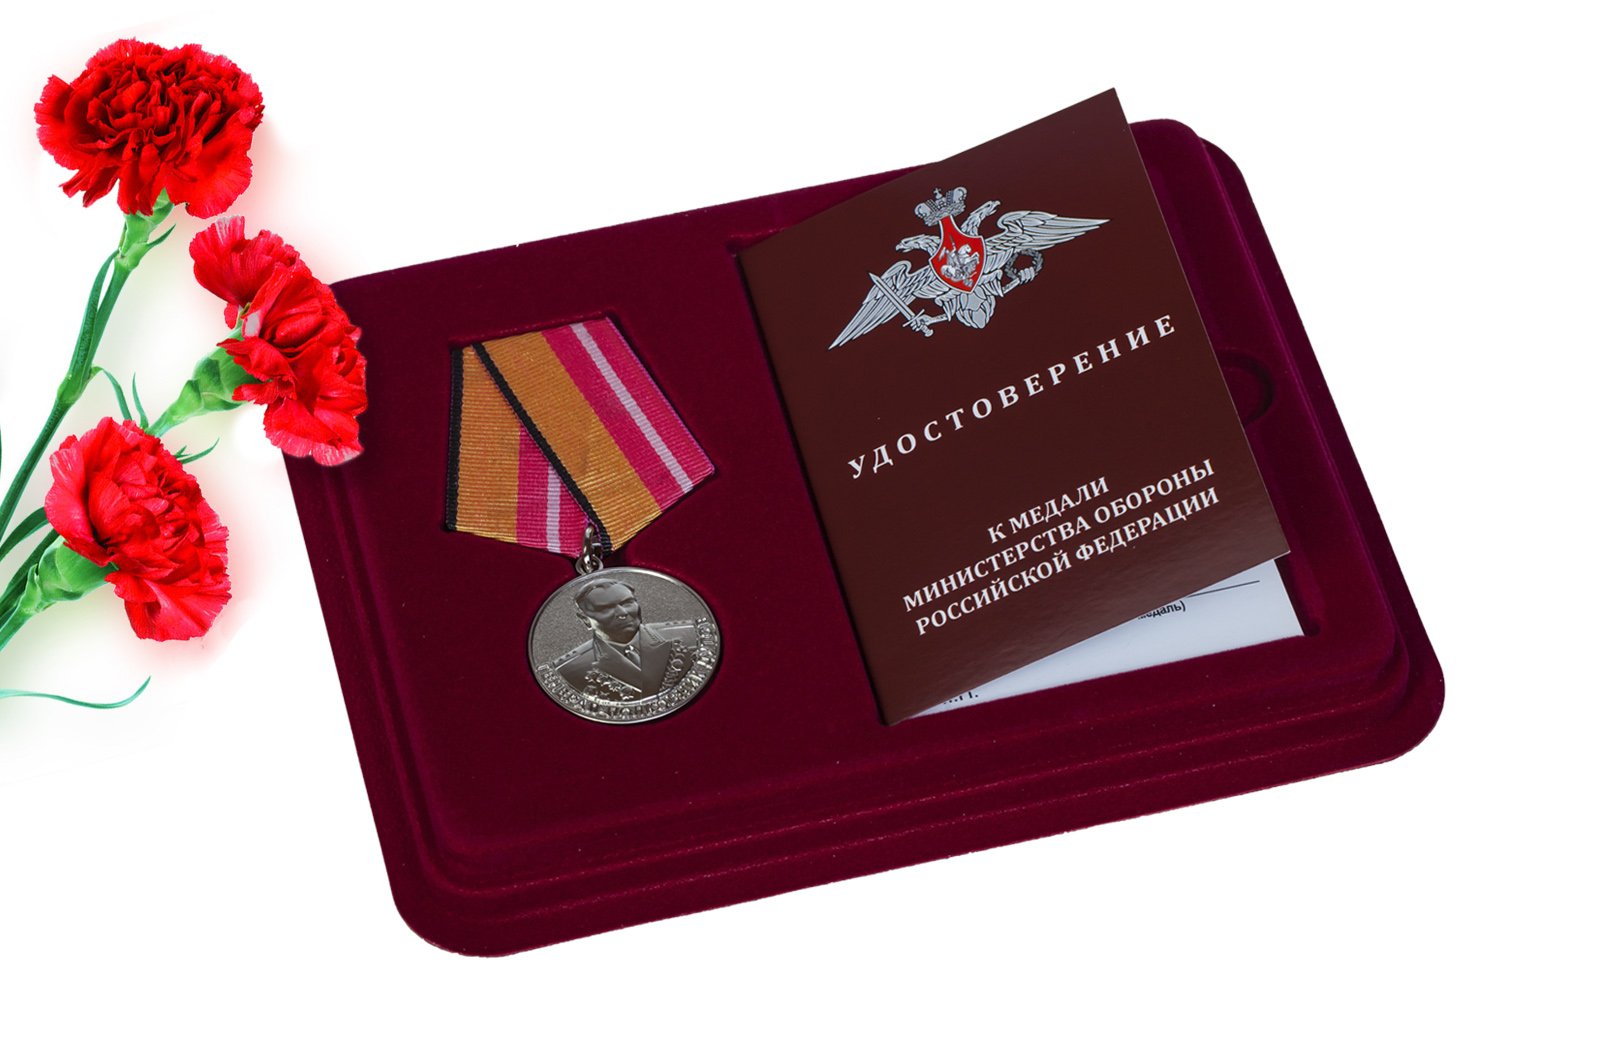 Купить медаль МО РФ Генерал-полковник Дутов оптом или в розницу